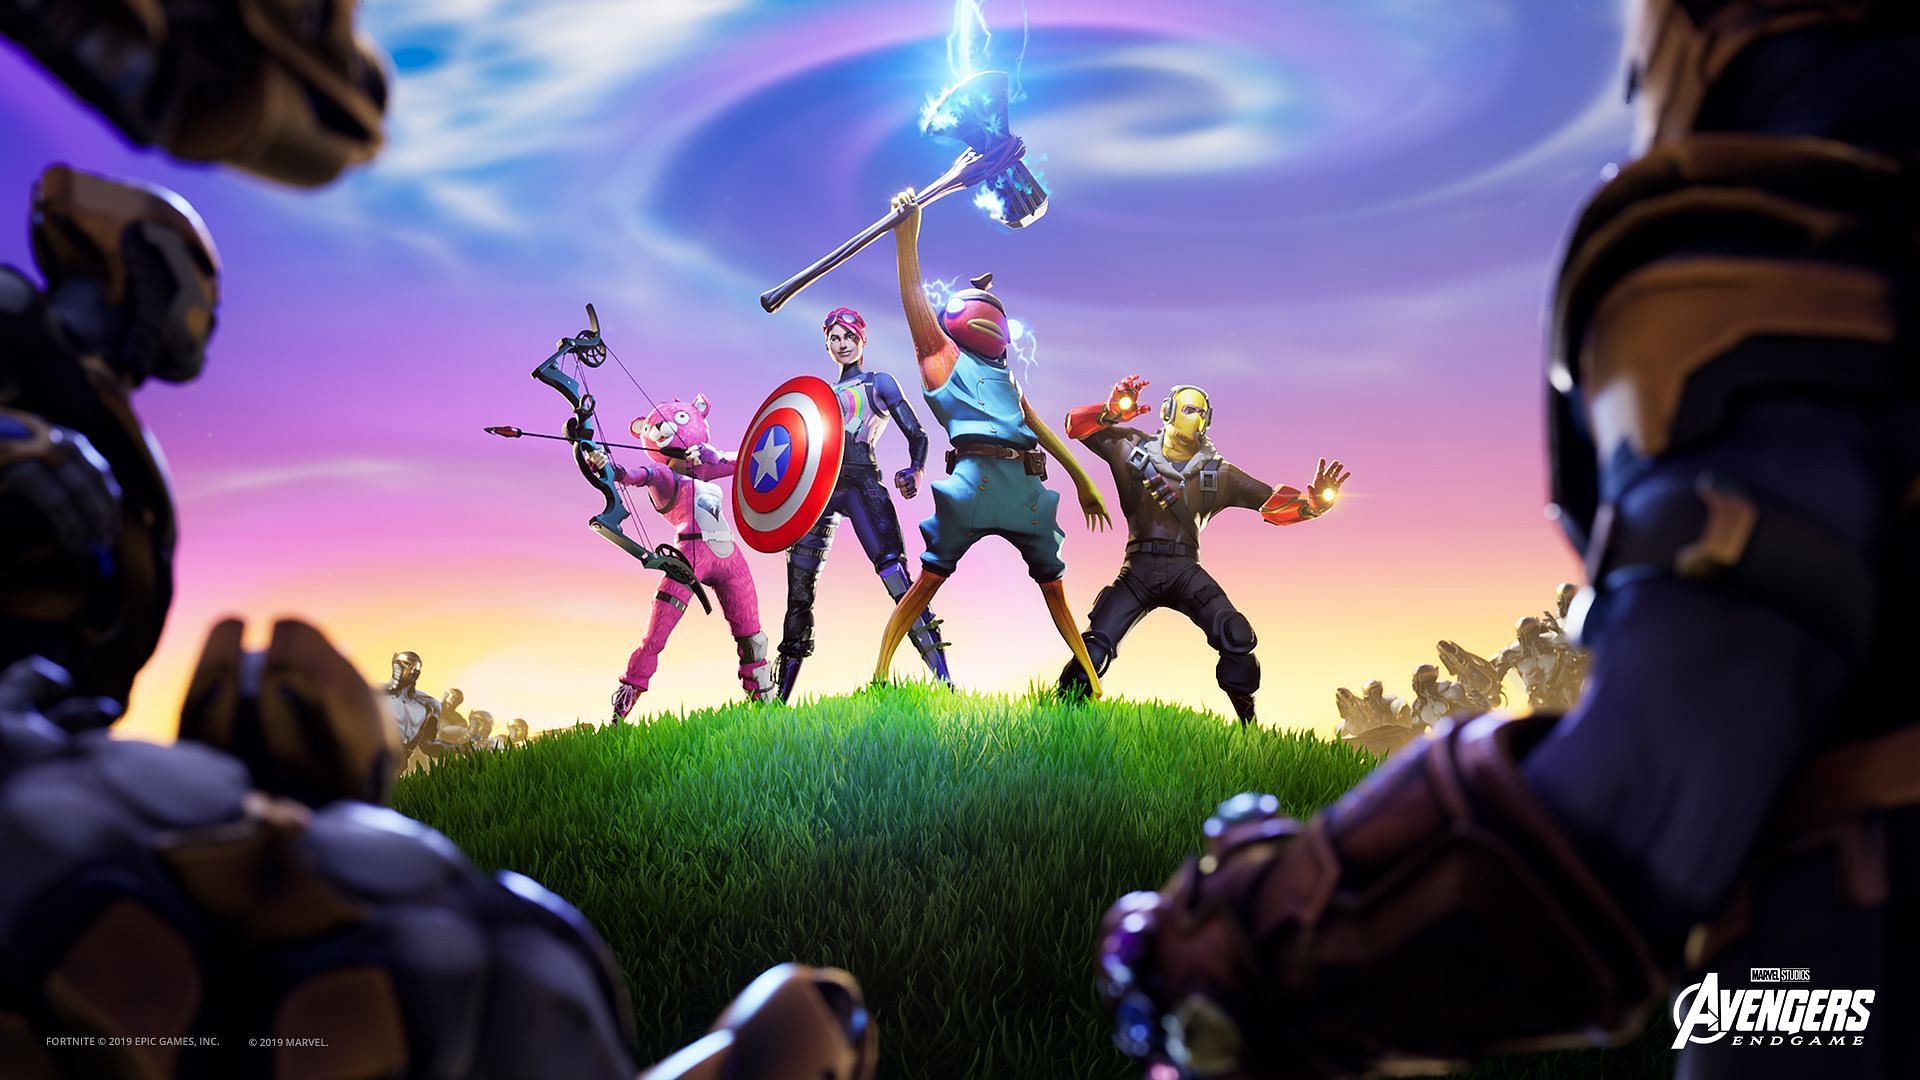 Avengers Endgame LTM in Fortnite (Image via Epic Games)